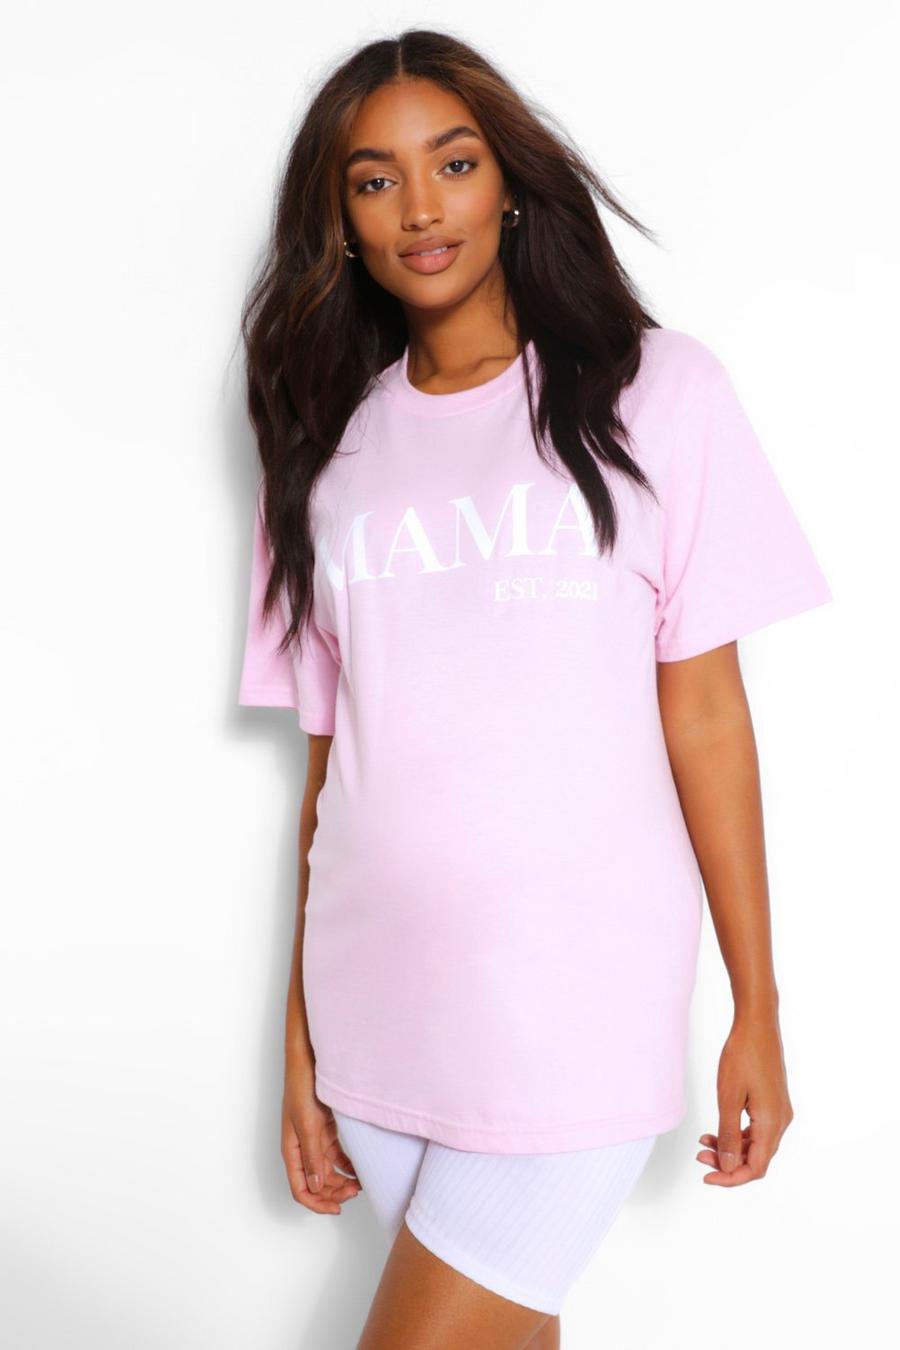 Camiseta con eslogan “Mama Est 2012” Ropa premamá, Rosa palo image number 1